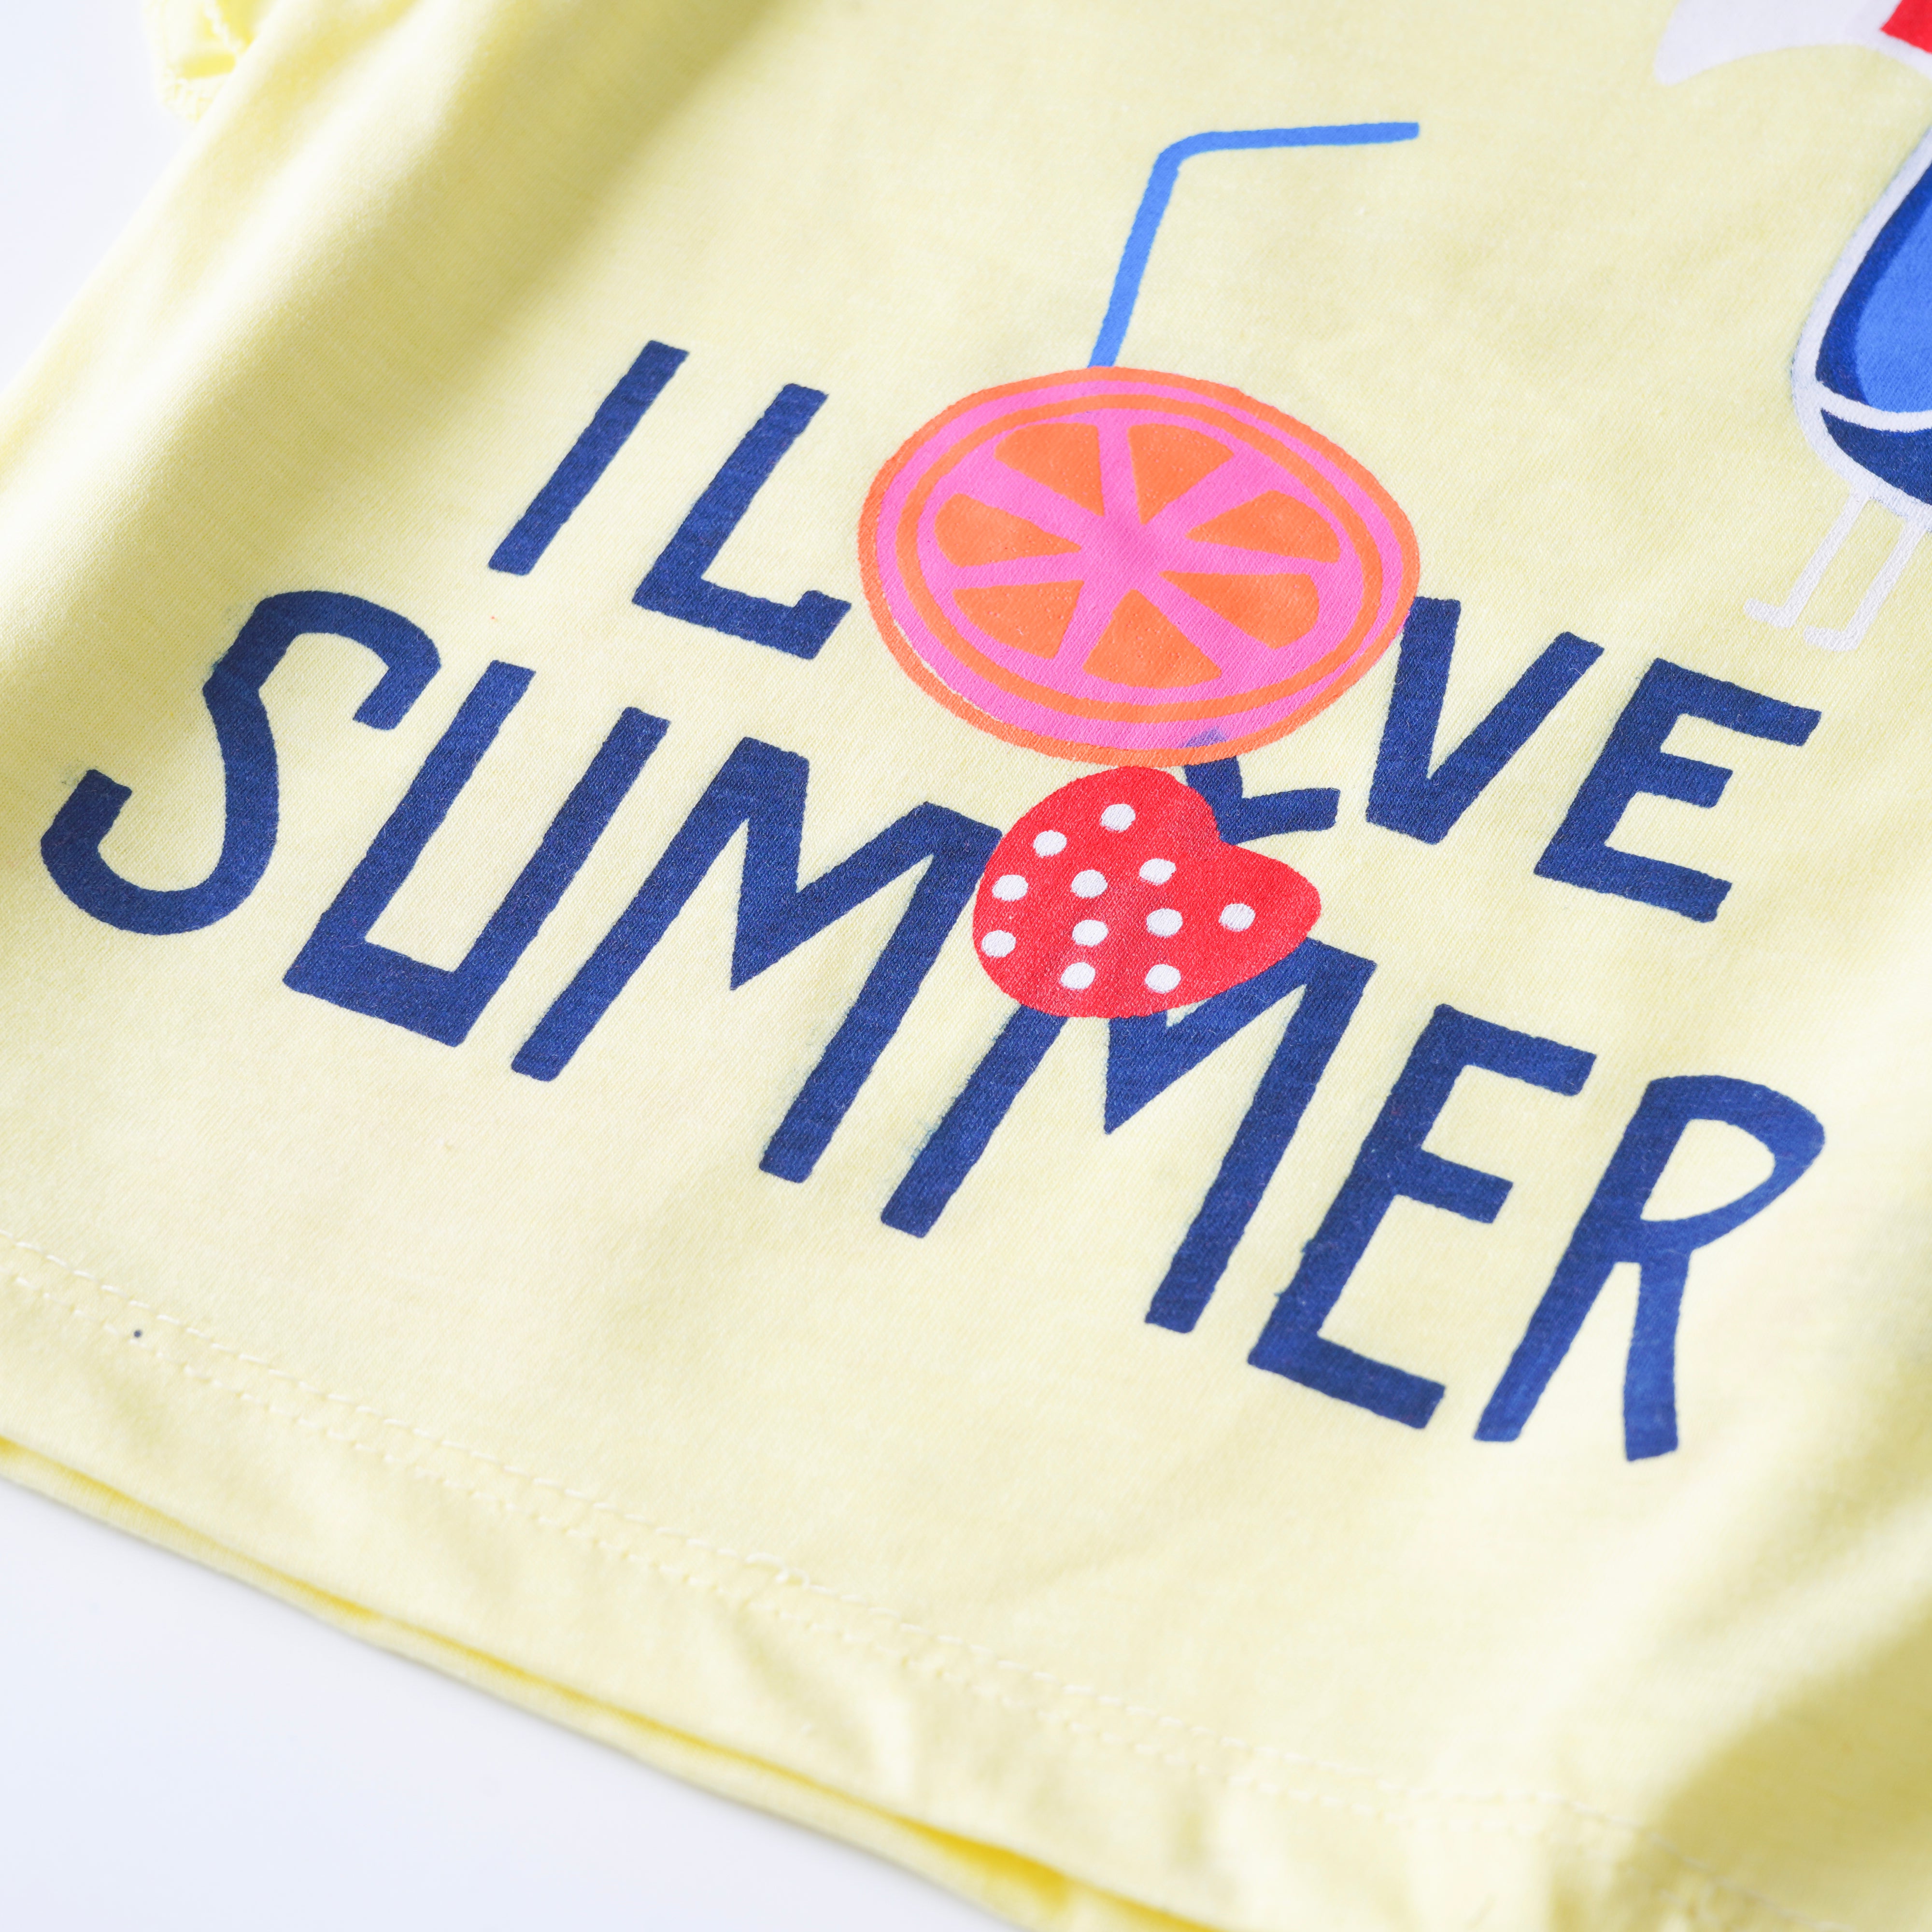 Girls T-shirt (I-Love-Summer)